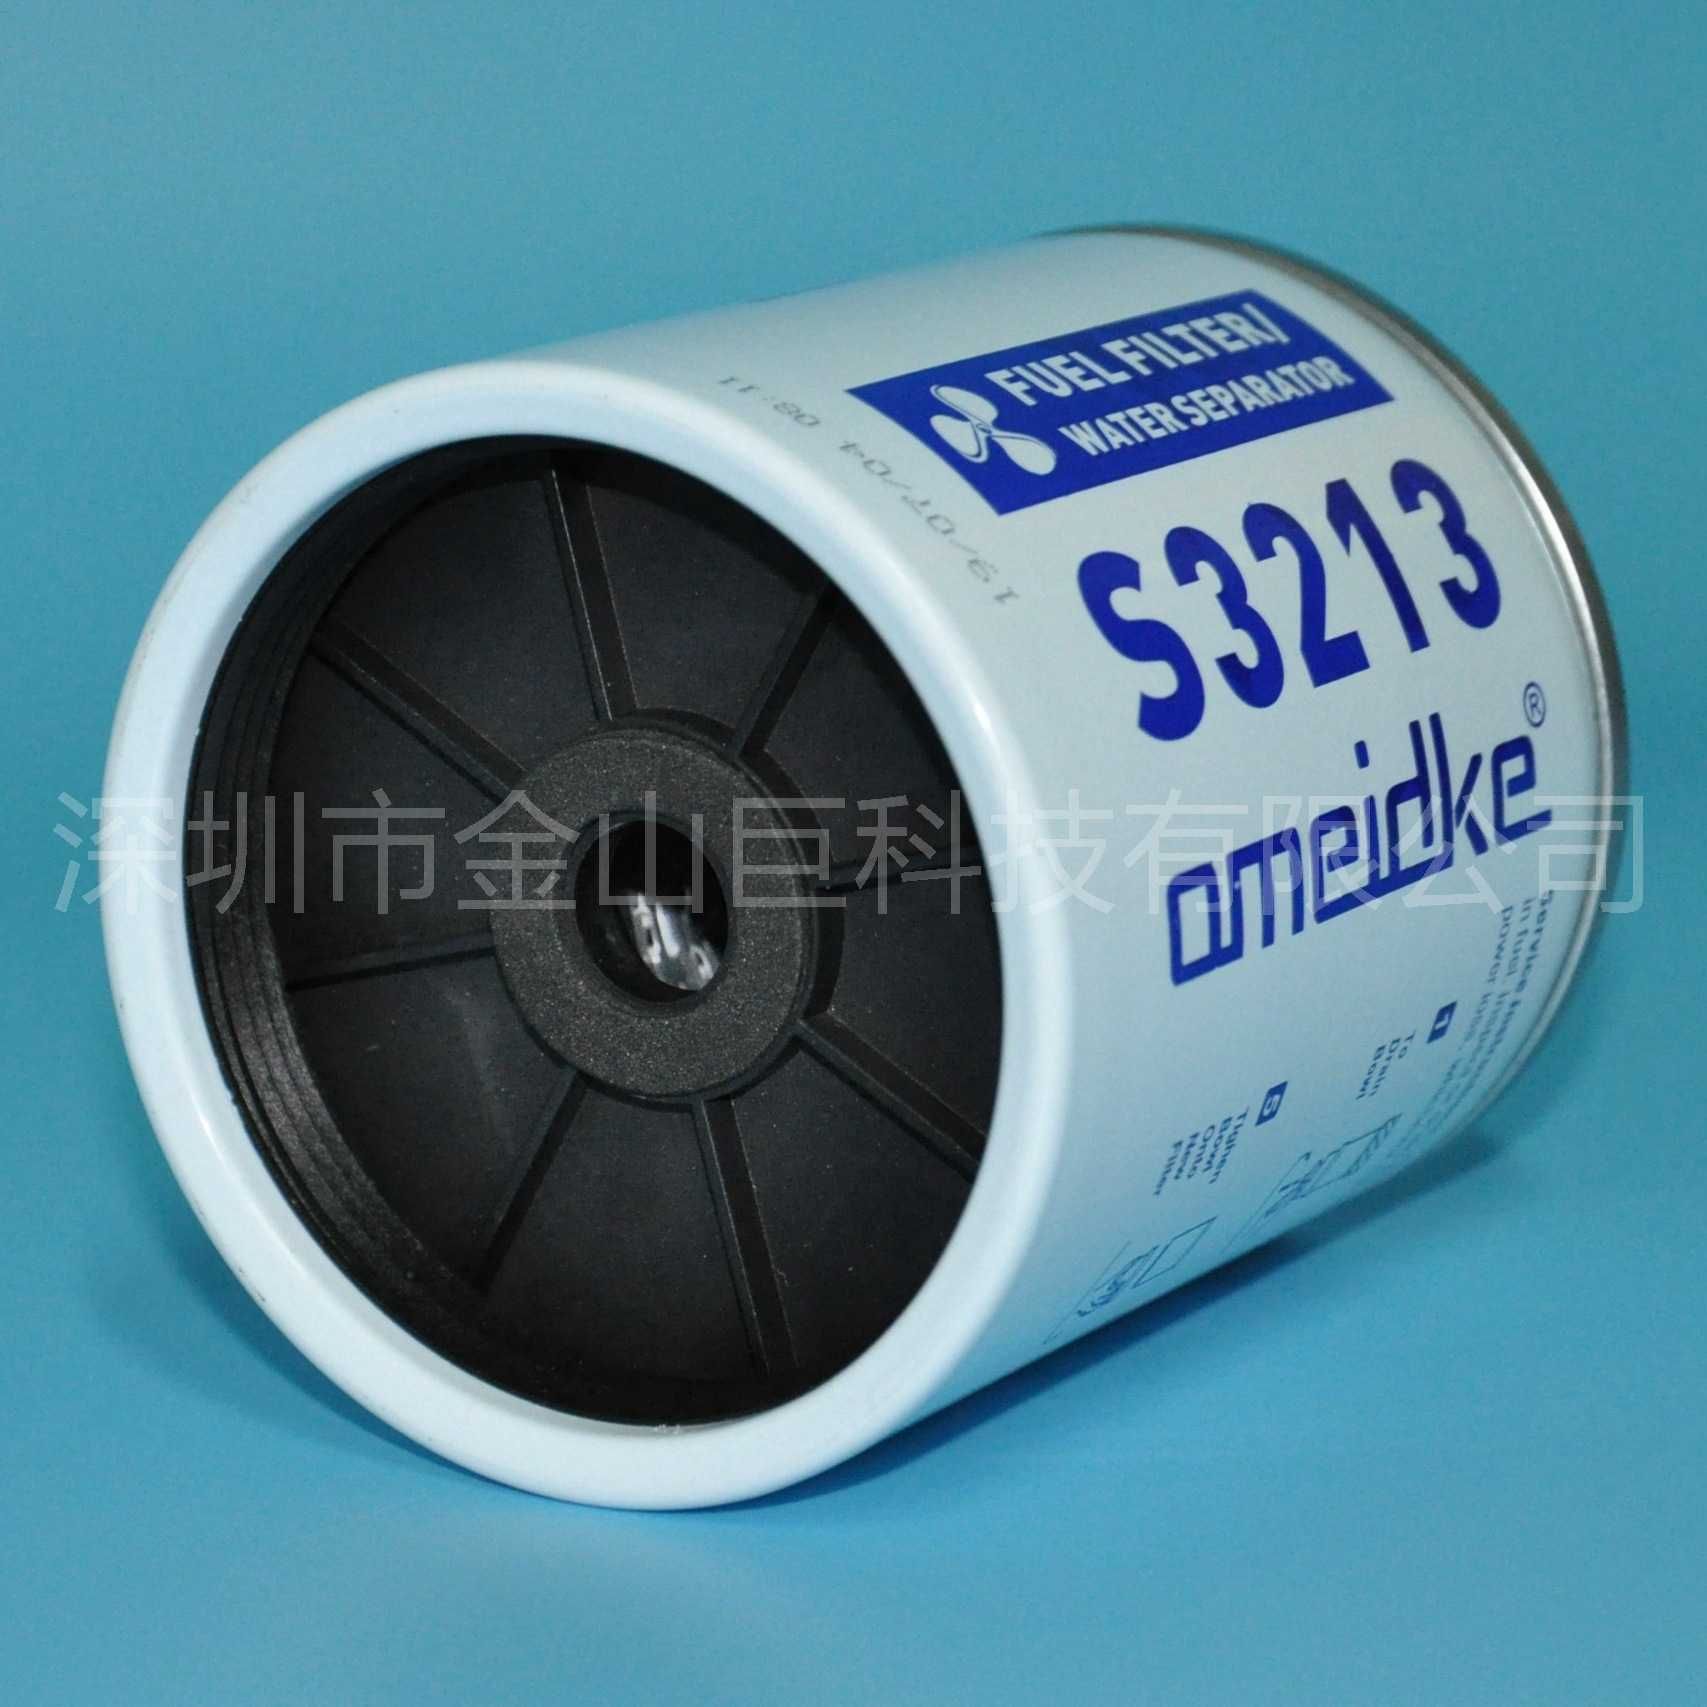 Фильтр для топливного сепаратора S3213, грязе-водоотделитель